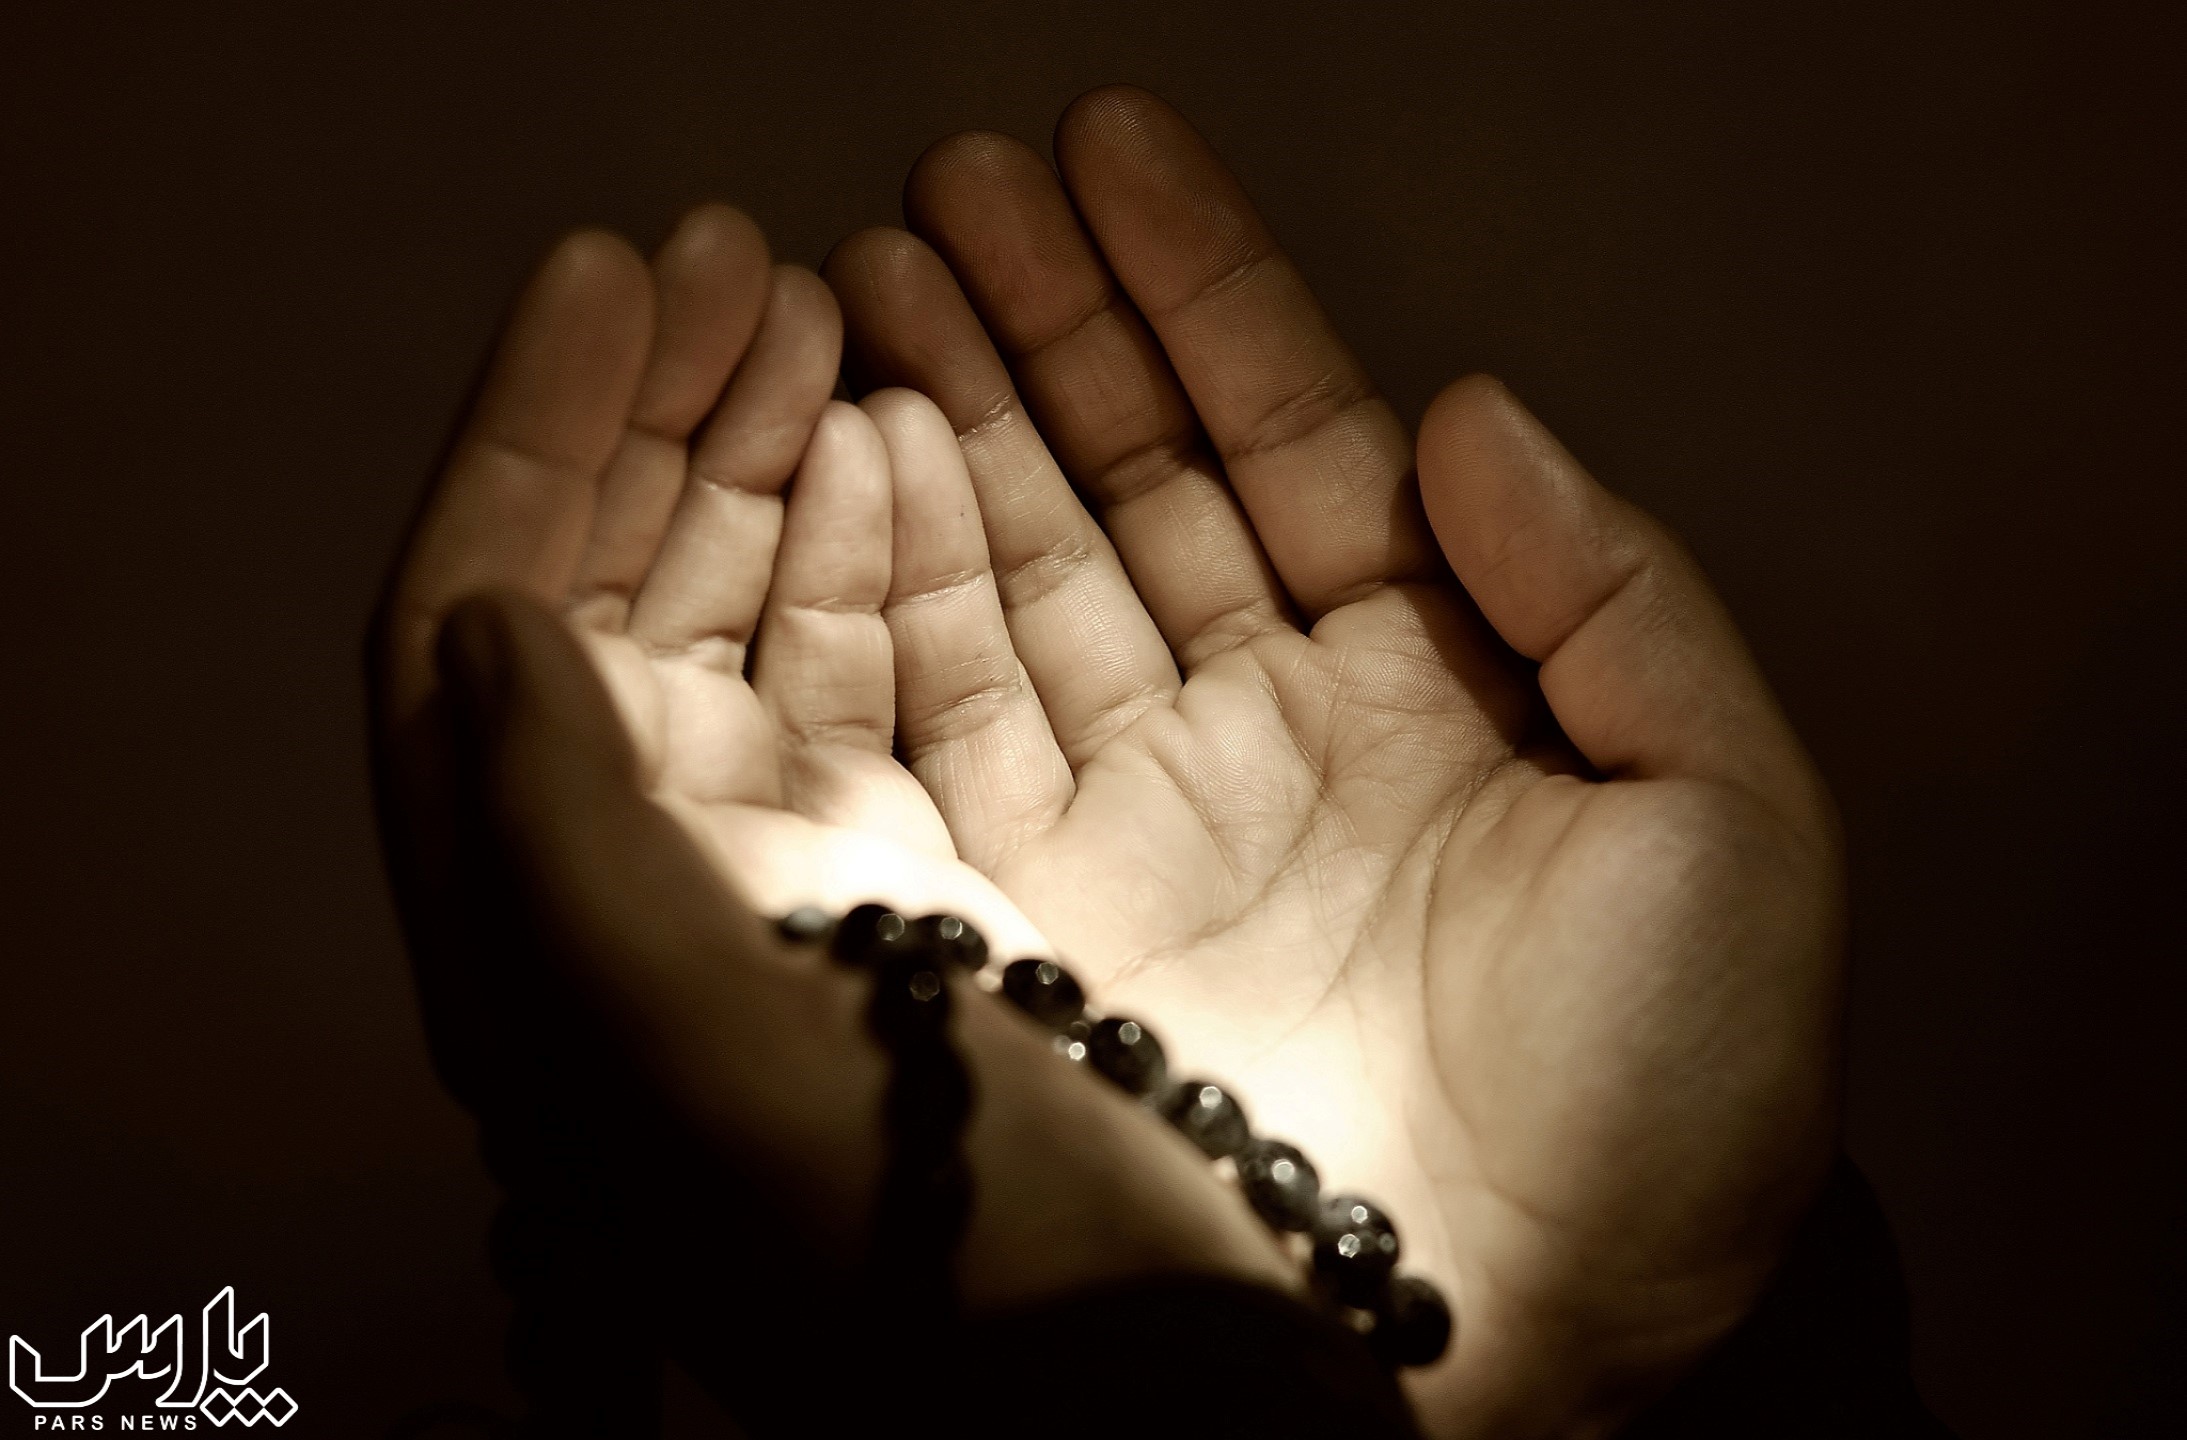 دعا کردن - بهترین زمان برای دعا کردن